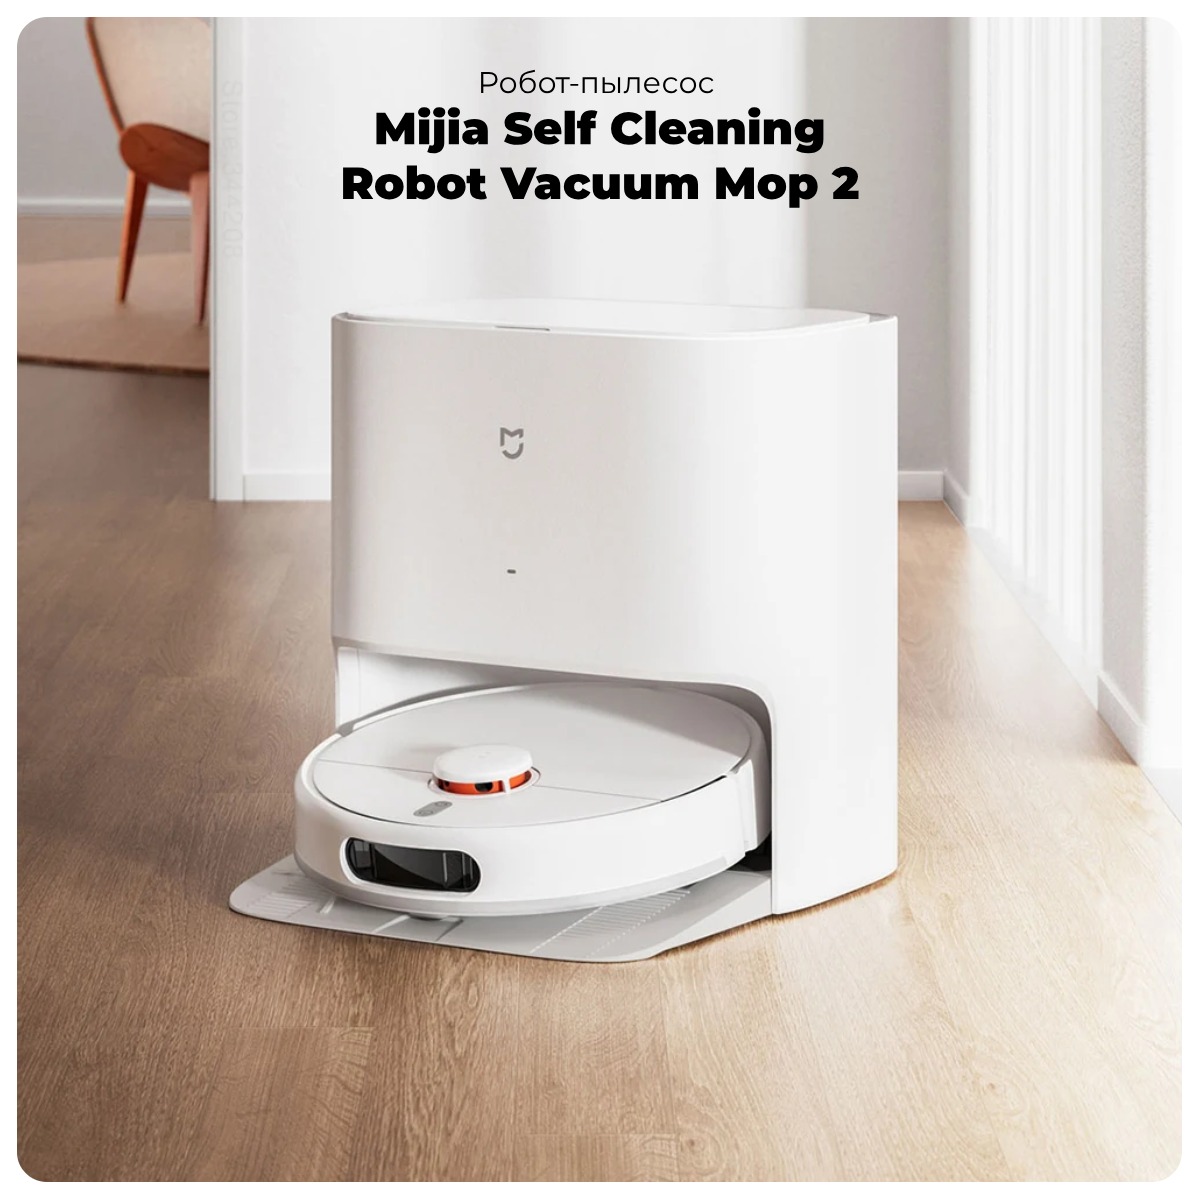 Mijia-Self-Cleaning-Robot-Vacuum-Mop-2-01